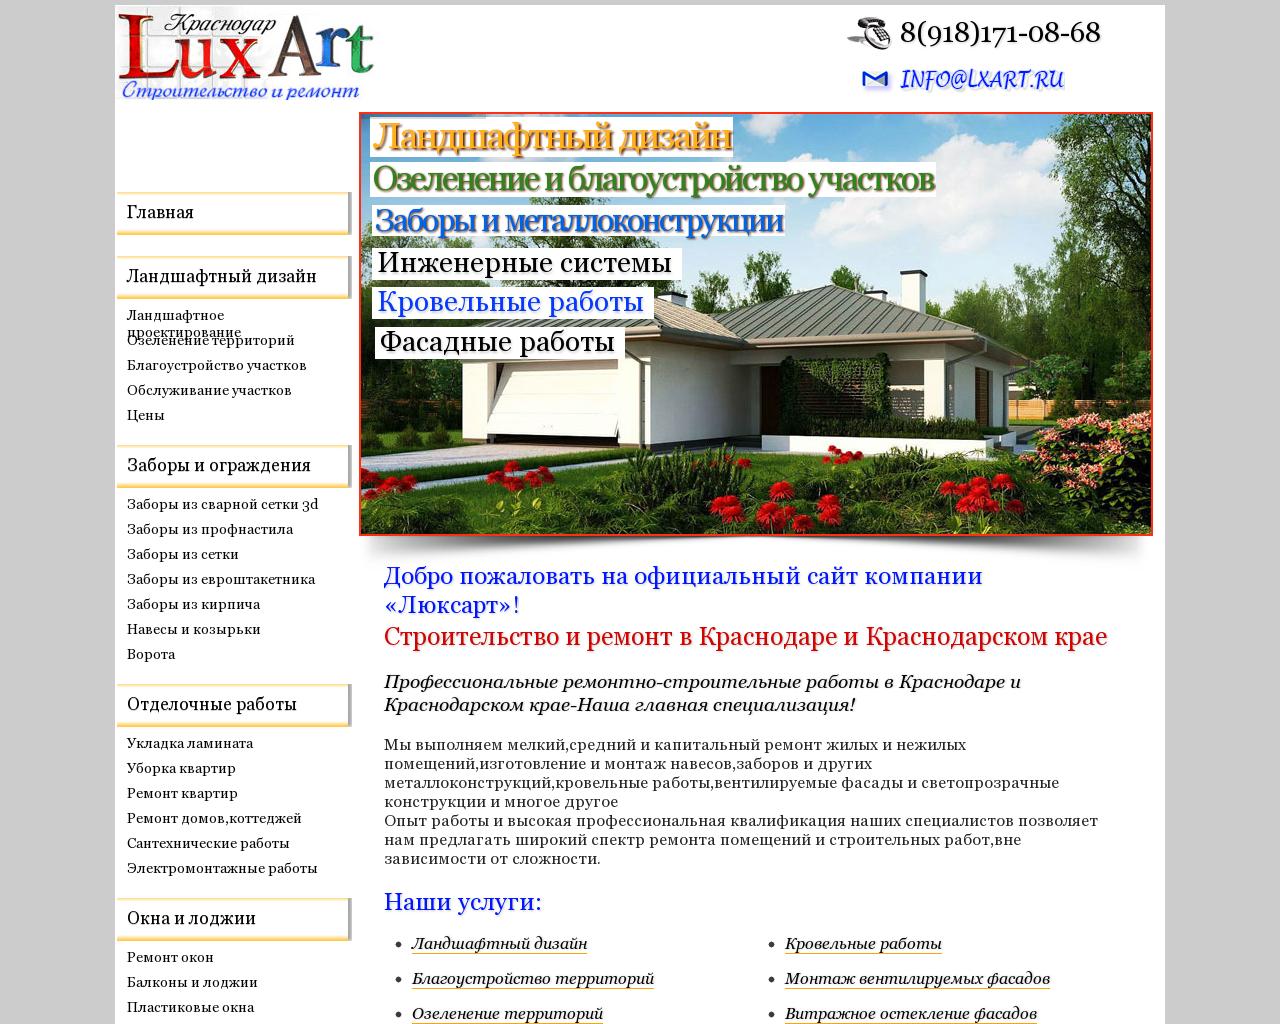 Изображение сайта lxart.ru в разрешении 1280x1024